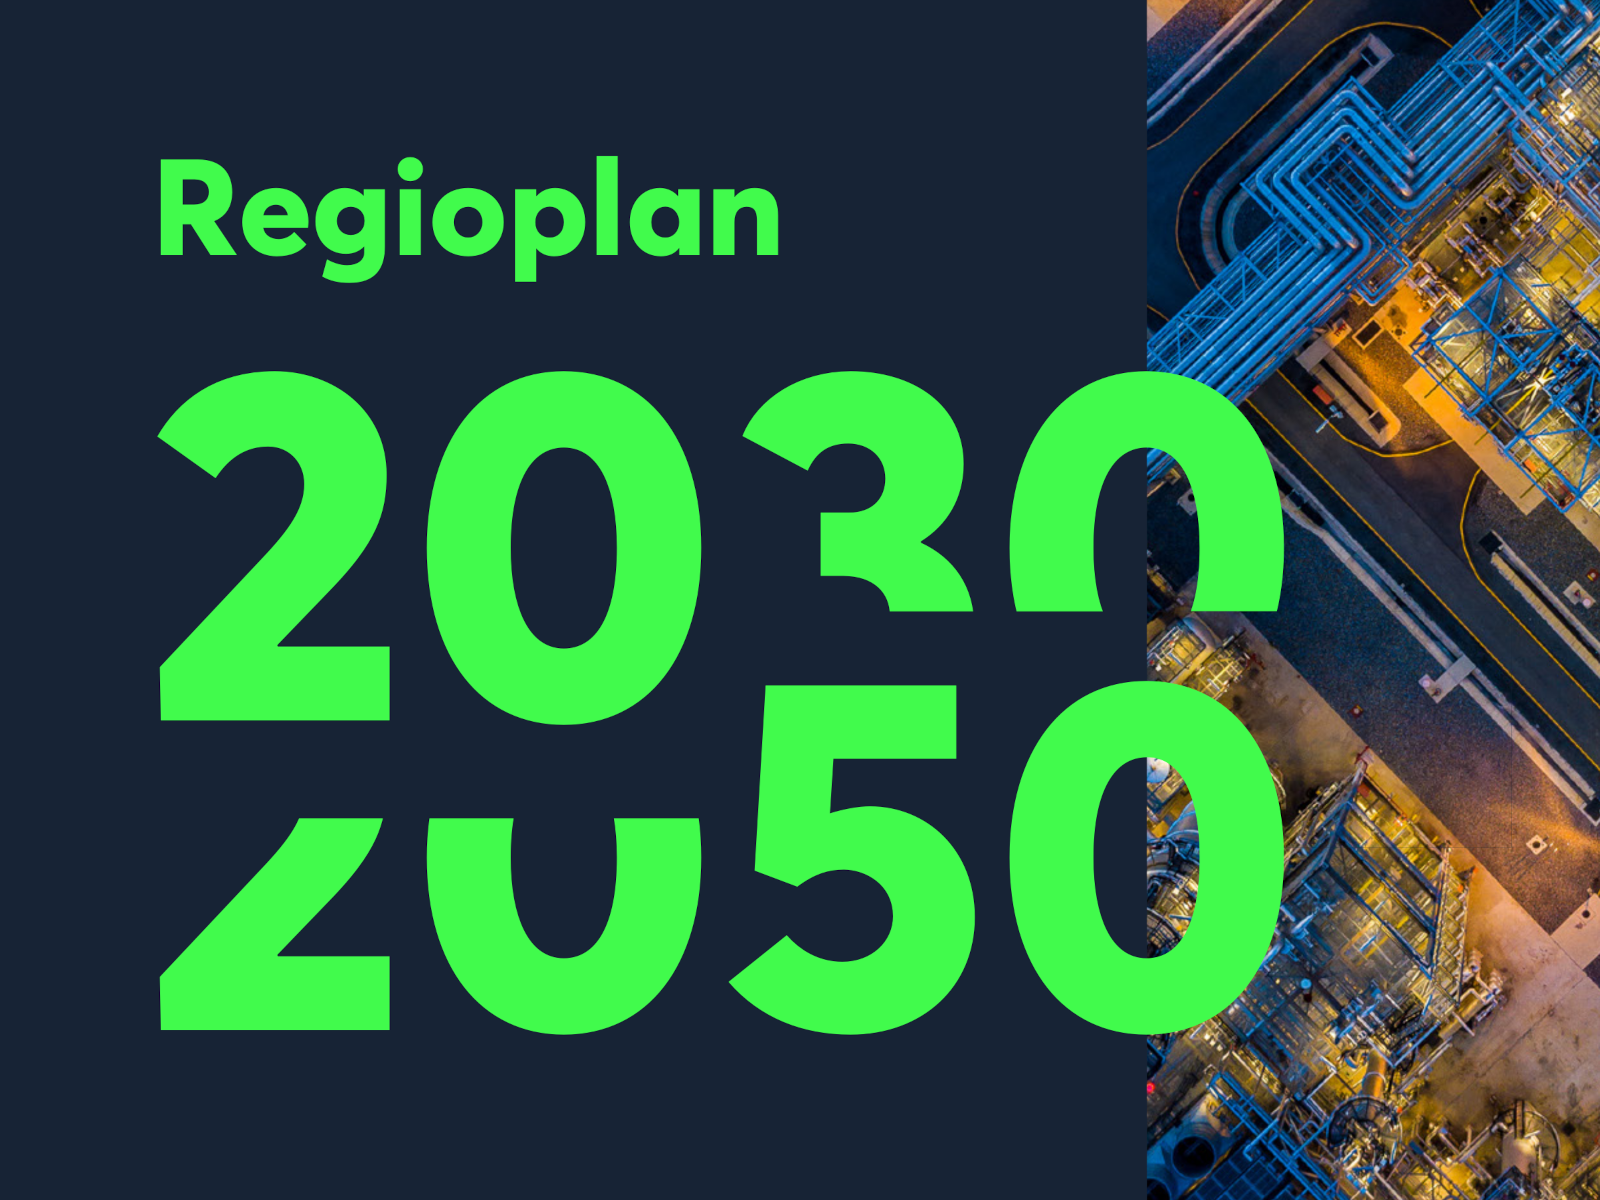 Regioplan-2030-2050-SDR-regio-gepresenteerd